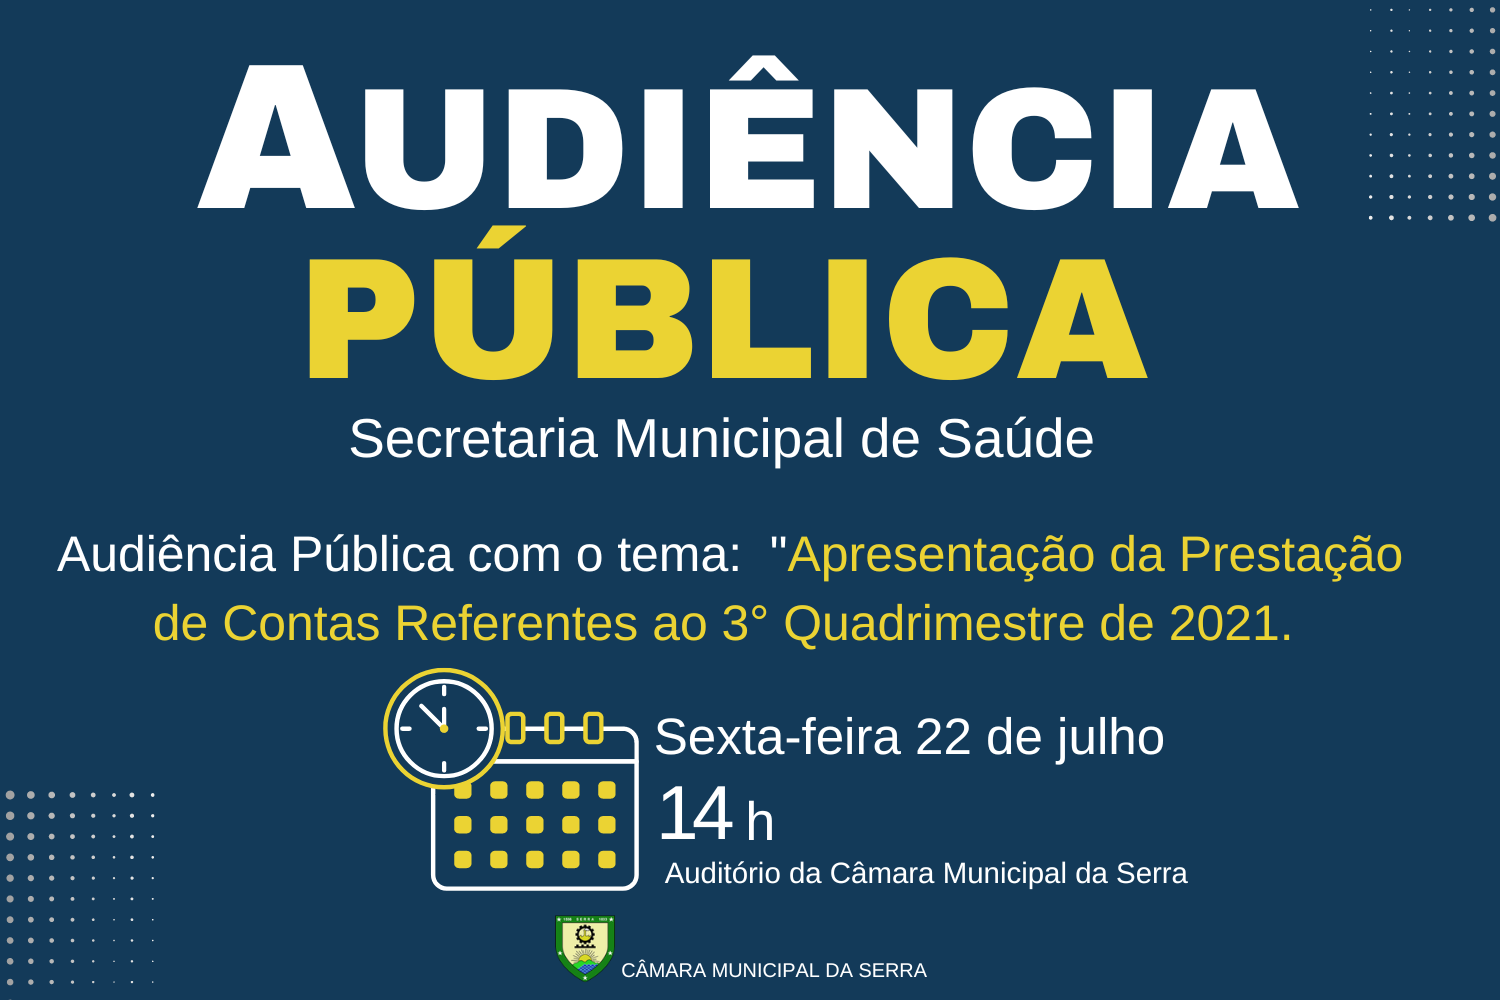 Audiência Pública - Apresentação da Prestação de Contas Referentes ao 3° Quadrimestre de 2021.